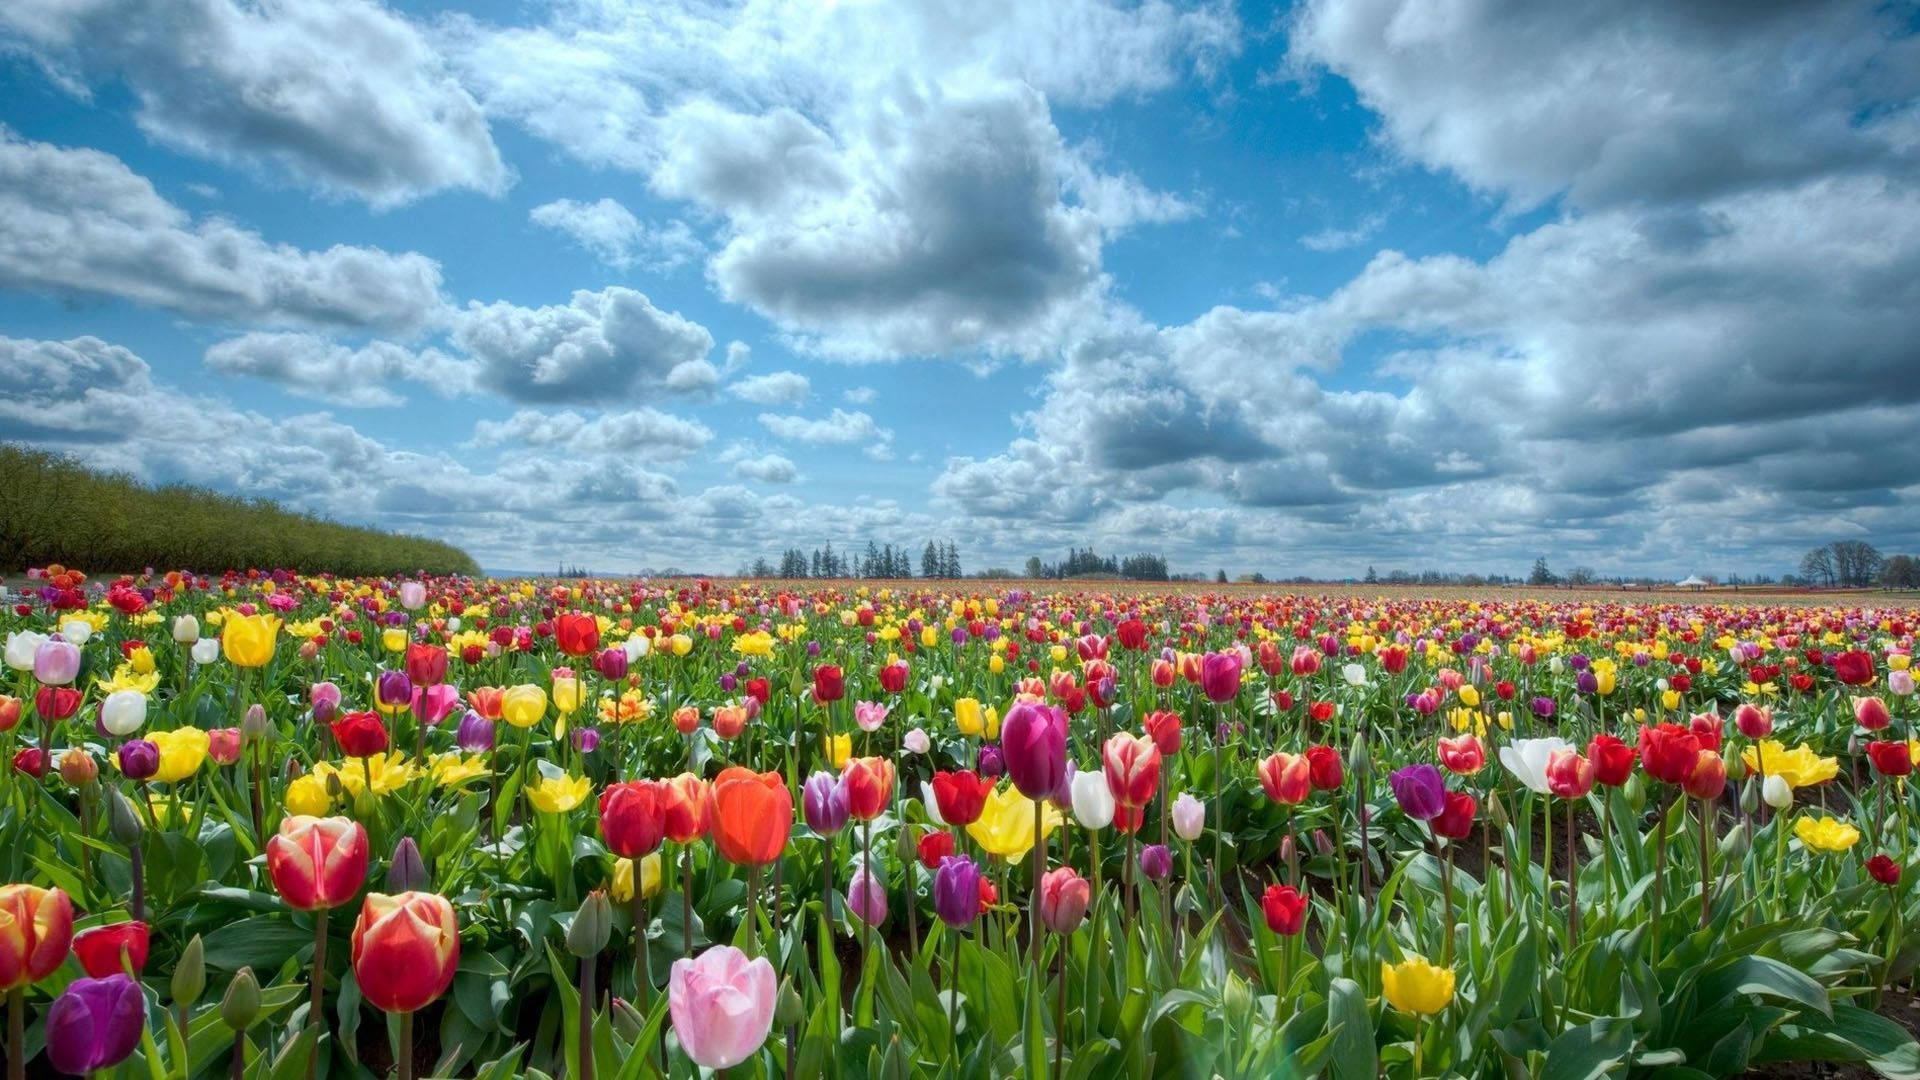 Download Flower Field Of Tulips Wallpaper 